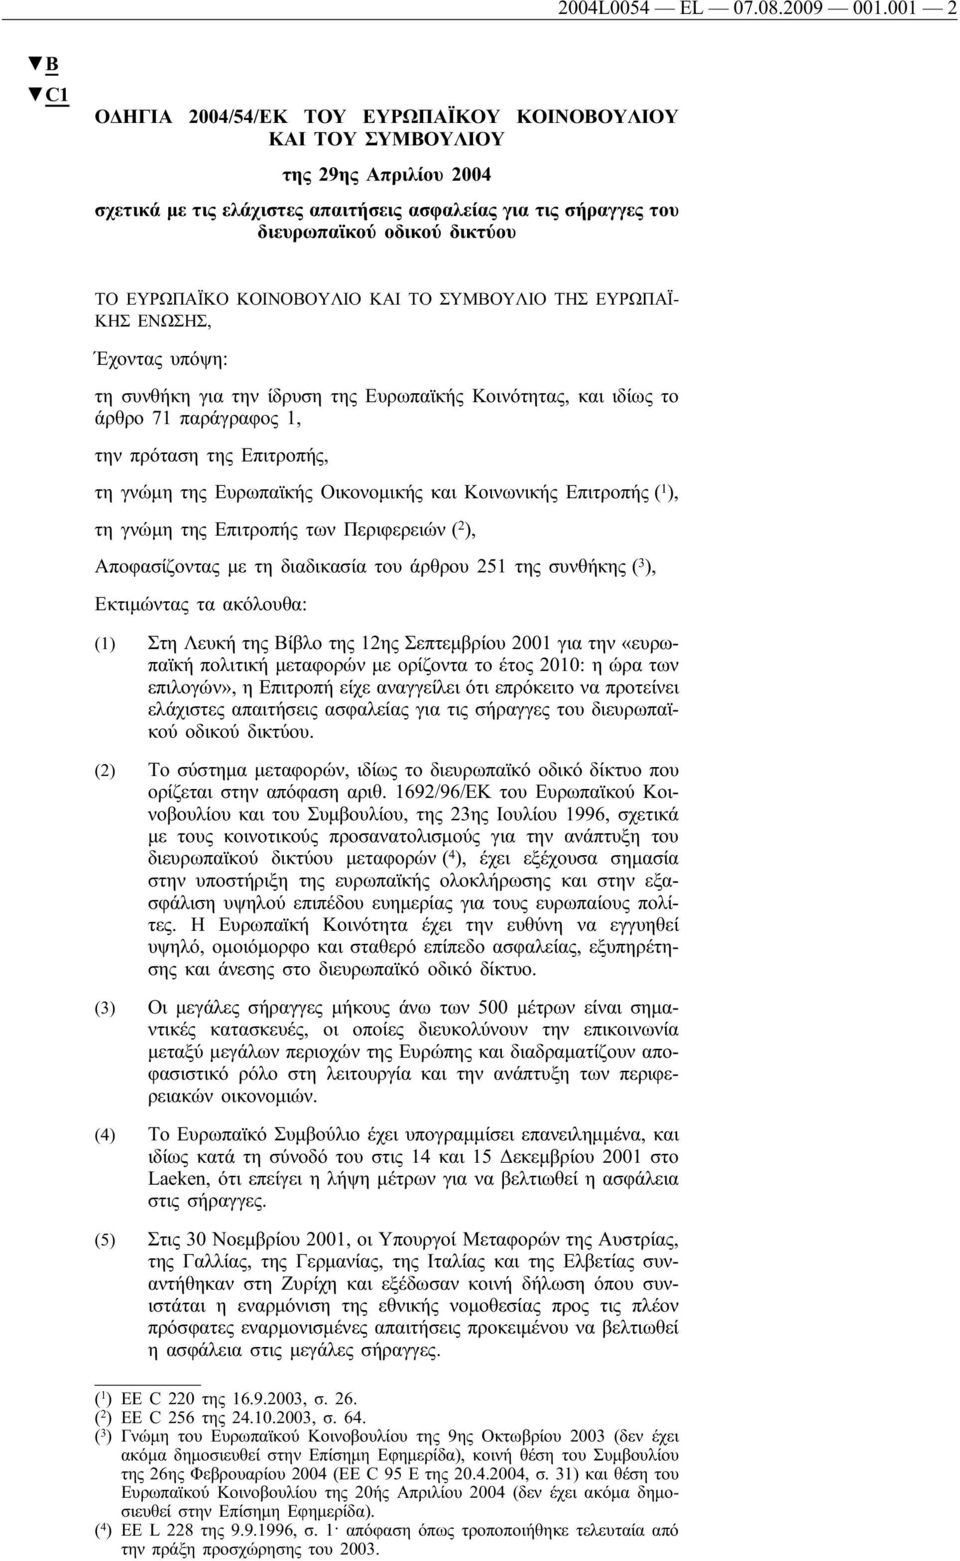 ΕΥΡΩΠΑΪΚΟ ΚΟΙΝΟΒΟΥΛΙΟ ΚΑΙ ΤΟ ΣΥΜΒΟΥΛΙΟ ΤΗΣ ΕΥΡΩΠΑΪ- ΚΗΣ ΕΝΩΣΗΣ, Έχοντας υπόψη: τη συνθήκη για την ίδρυση της Ευρωπαϊκής Κοινότητας, και ιδίως το άρθρο 71 παράγραφος 1, την πρόταση της Επιτροπής, τη